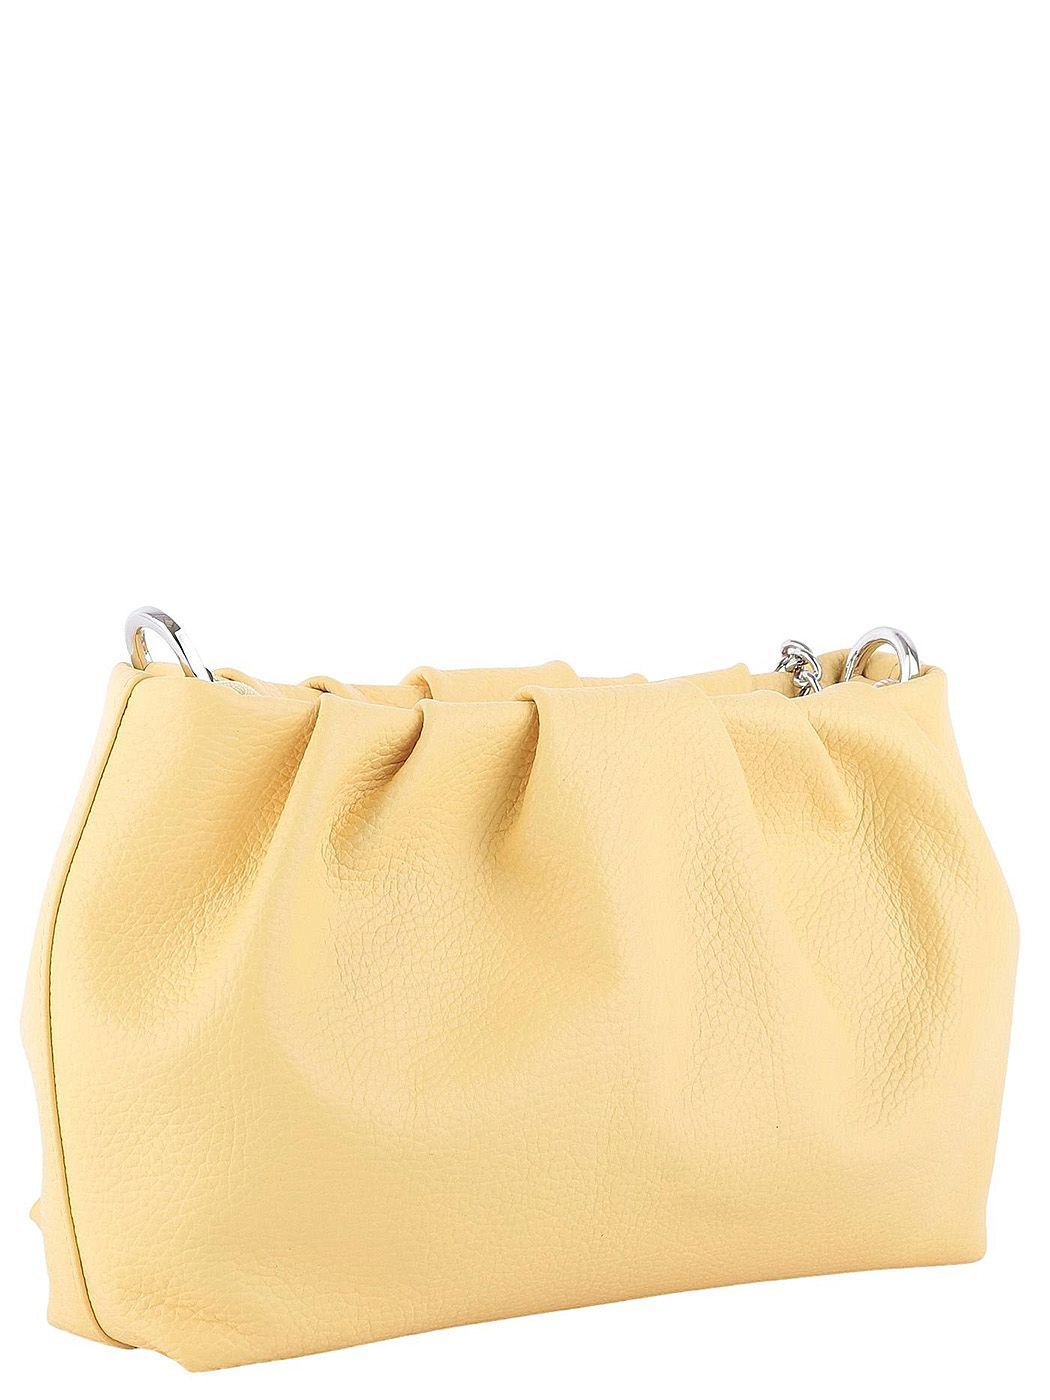 14400 FD желт сумка  жен. летн. натуральная кожа/текстиль желтый Fiato Dream